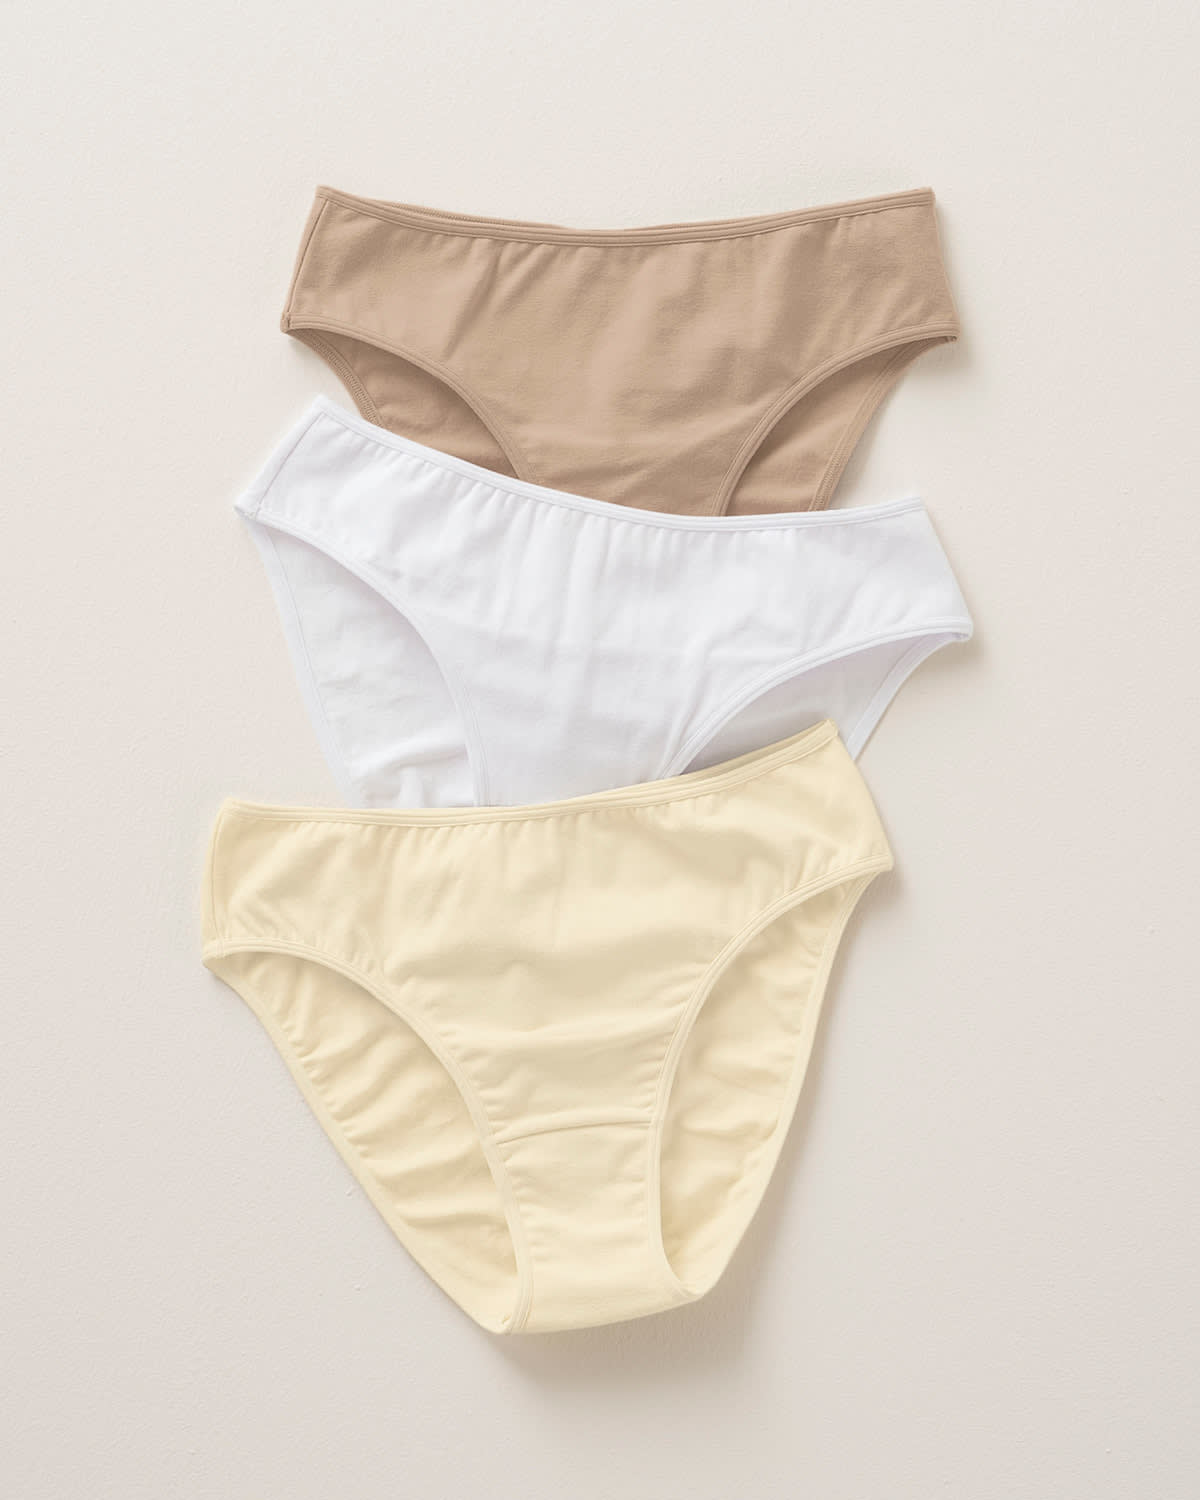 Brief Panties Cotton Ladies 3 Pack Stretch Hi Cut Briefs, Printed